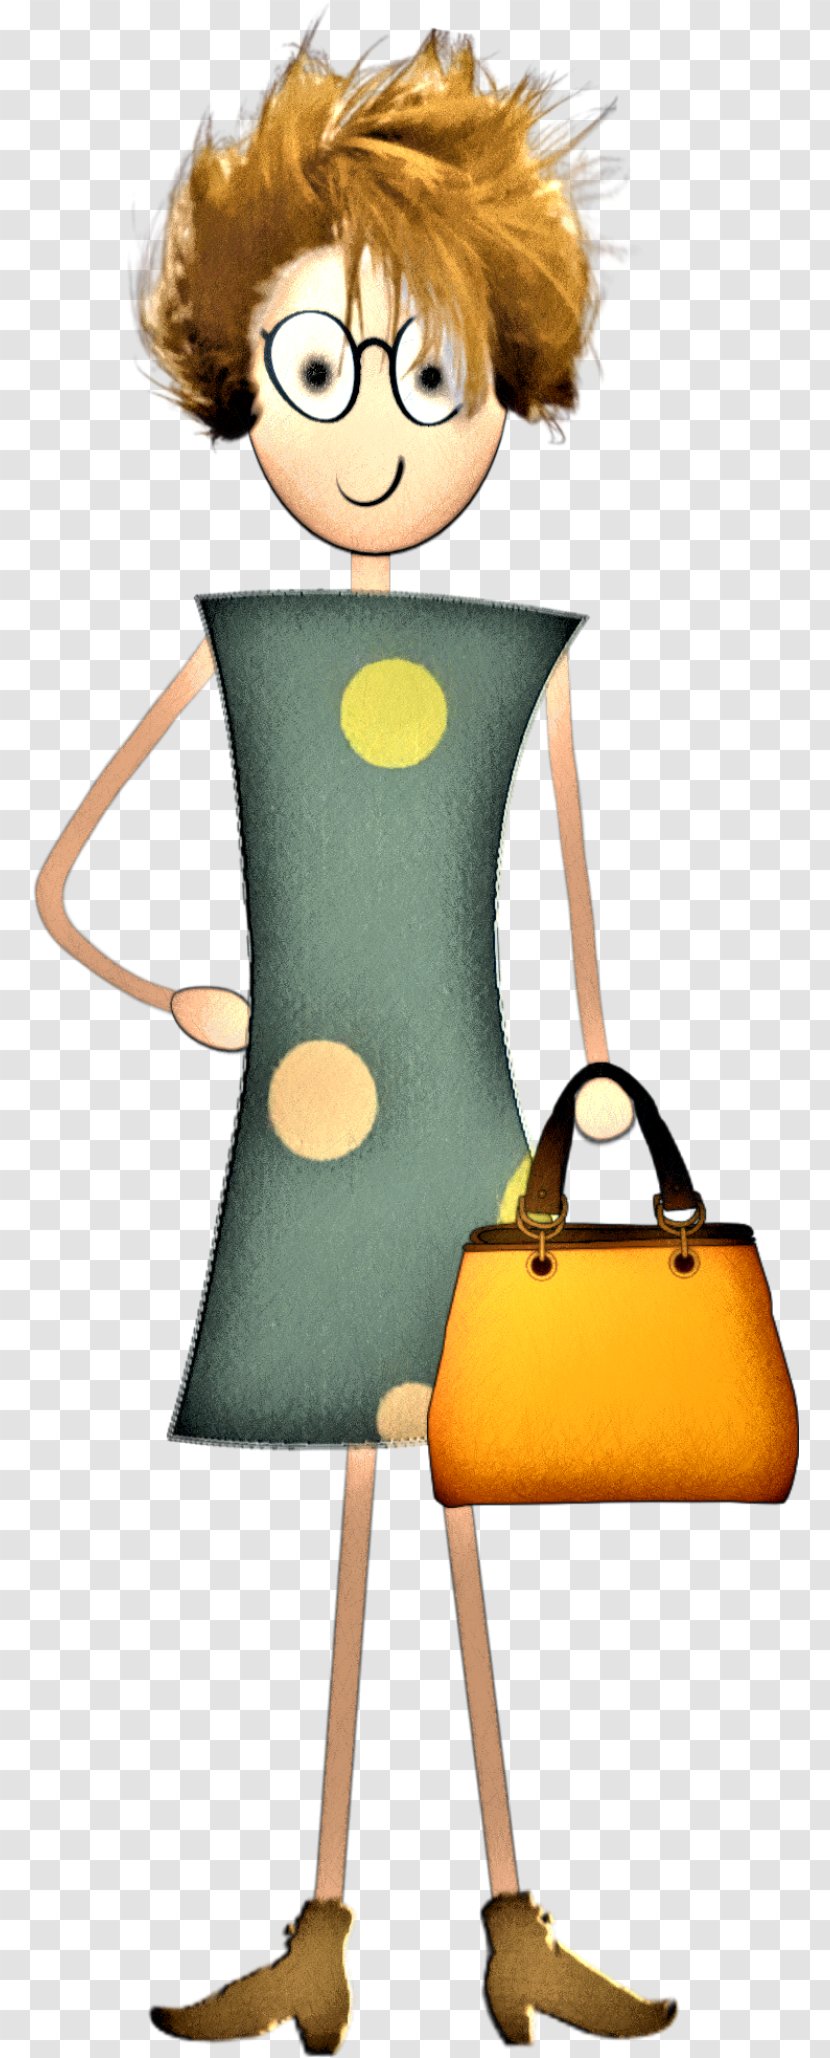 Yellow Background - Handbag Bag Transparent PNG